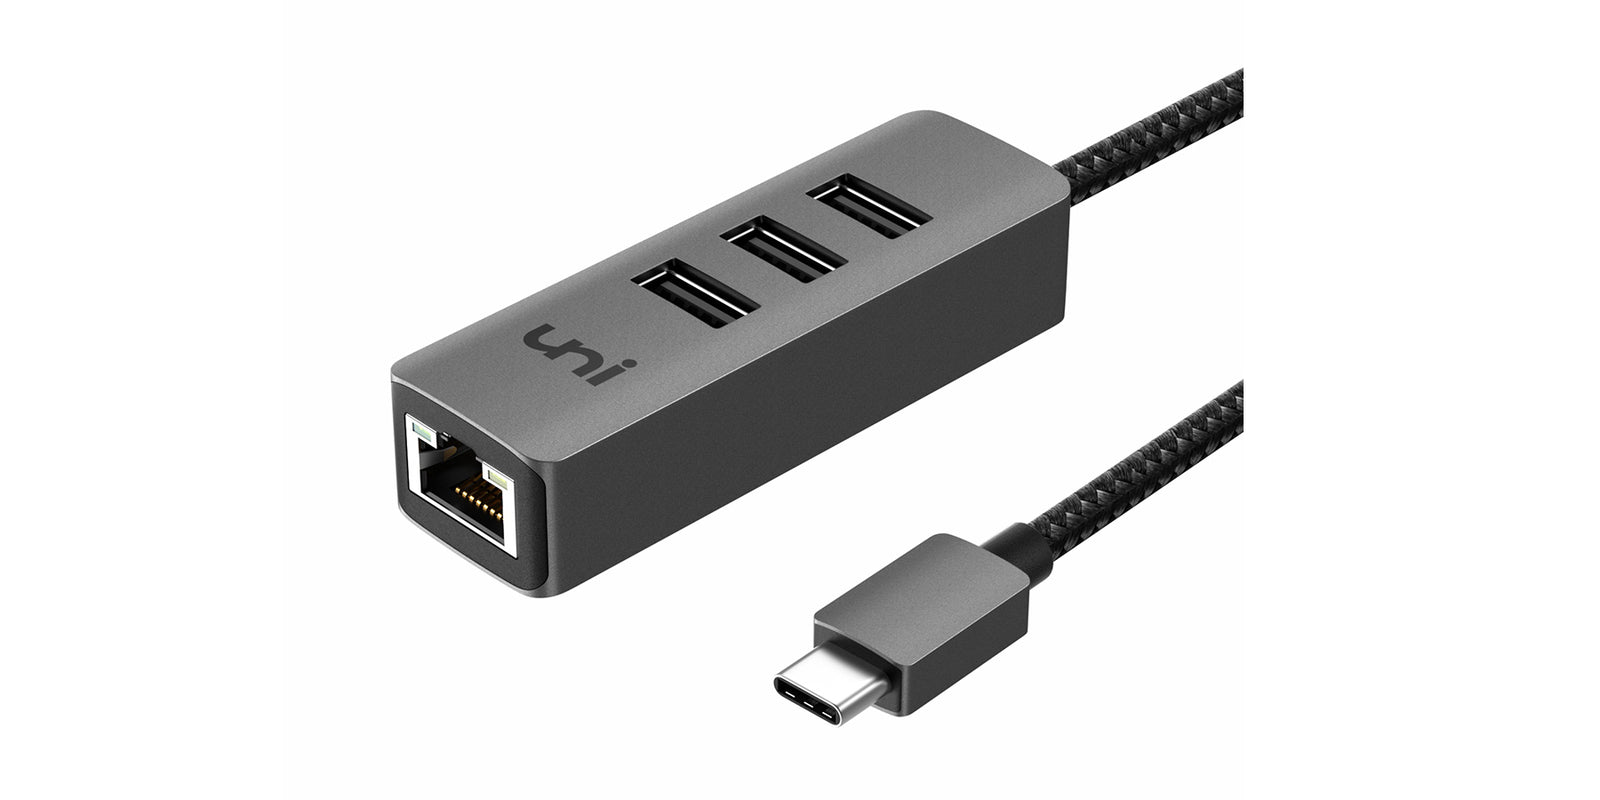 Adaptateur USB-C vers Ethernet/RJ45 - Adaptateurs réseau USB et USB-C